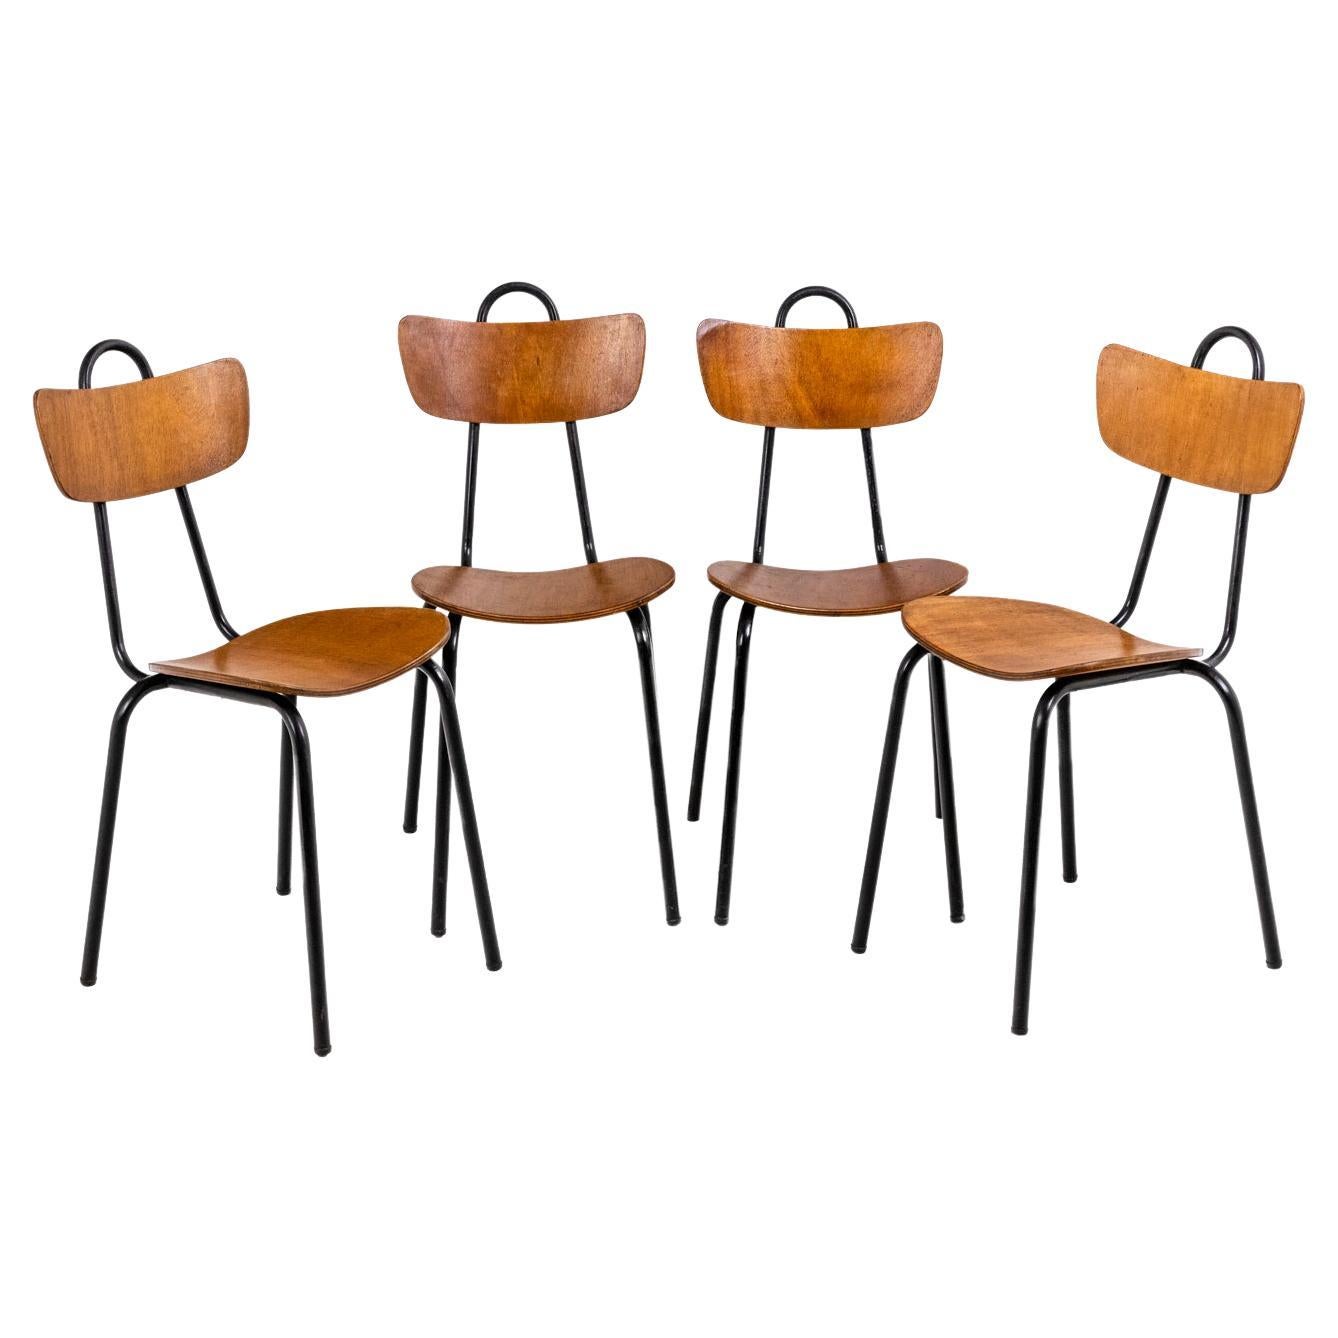 Serie von vier Stühlen aus Holz und Metall, 1950er-Jahre